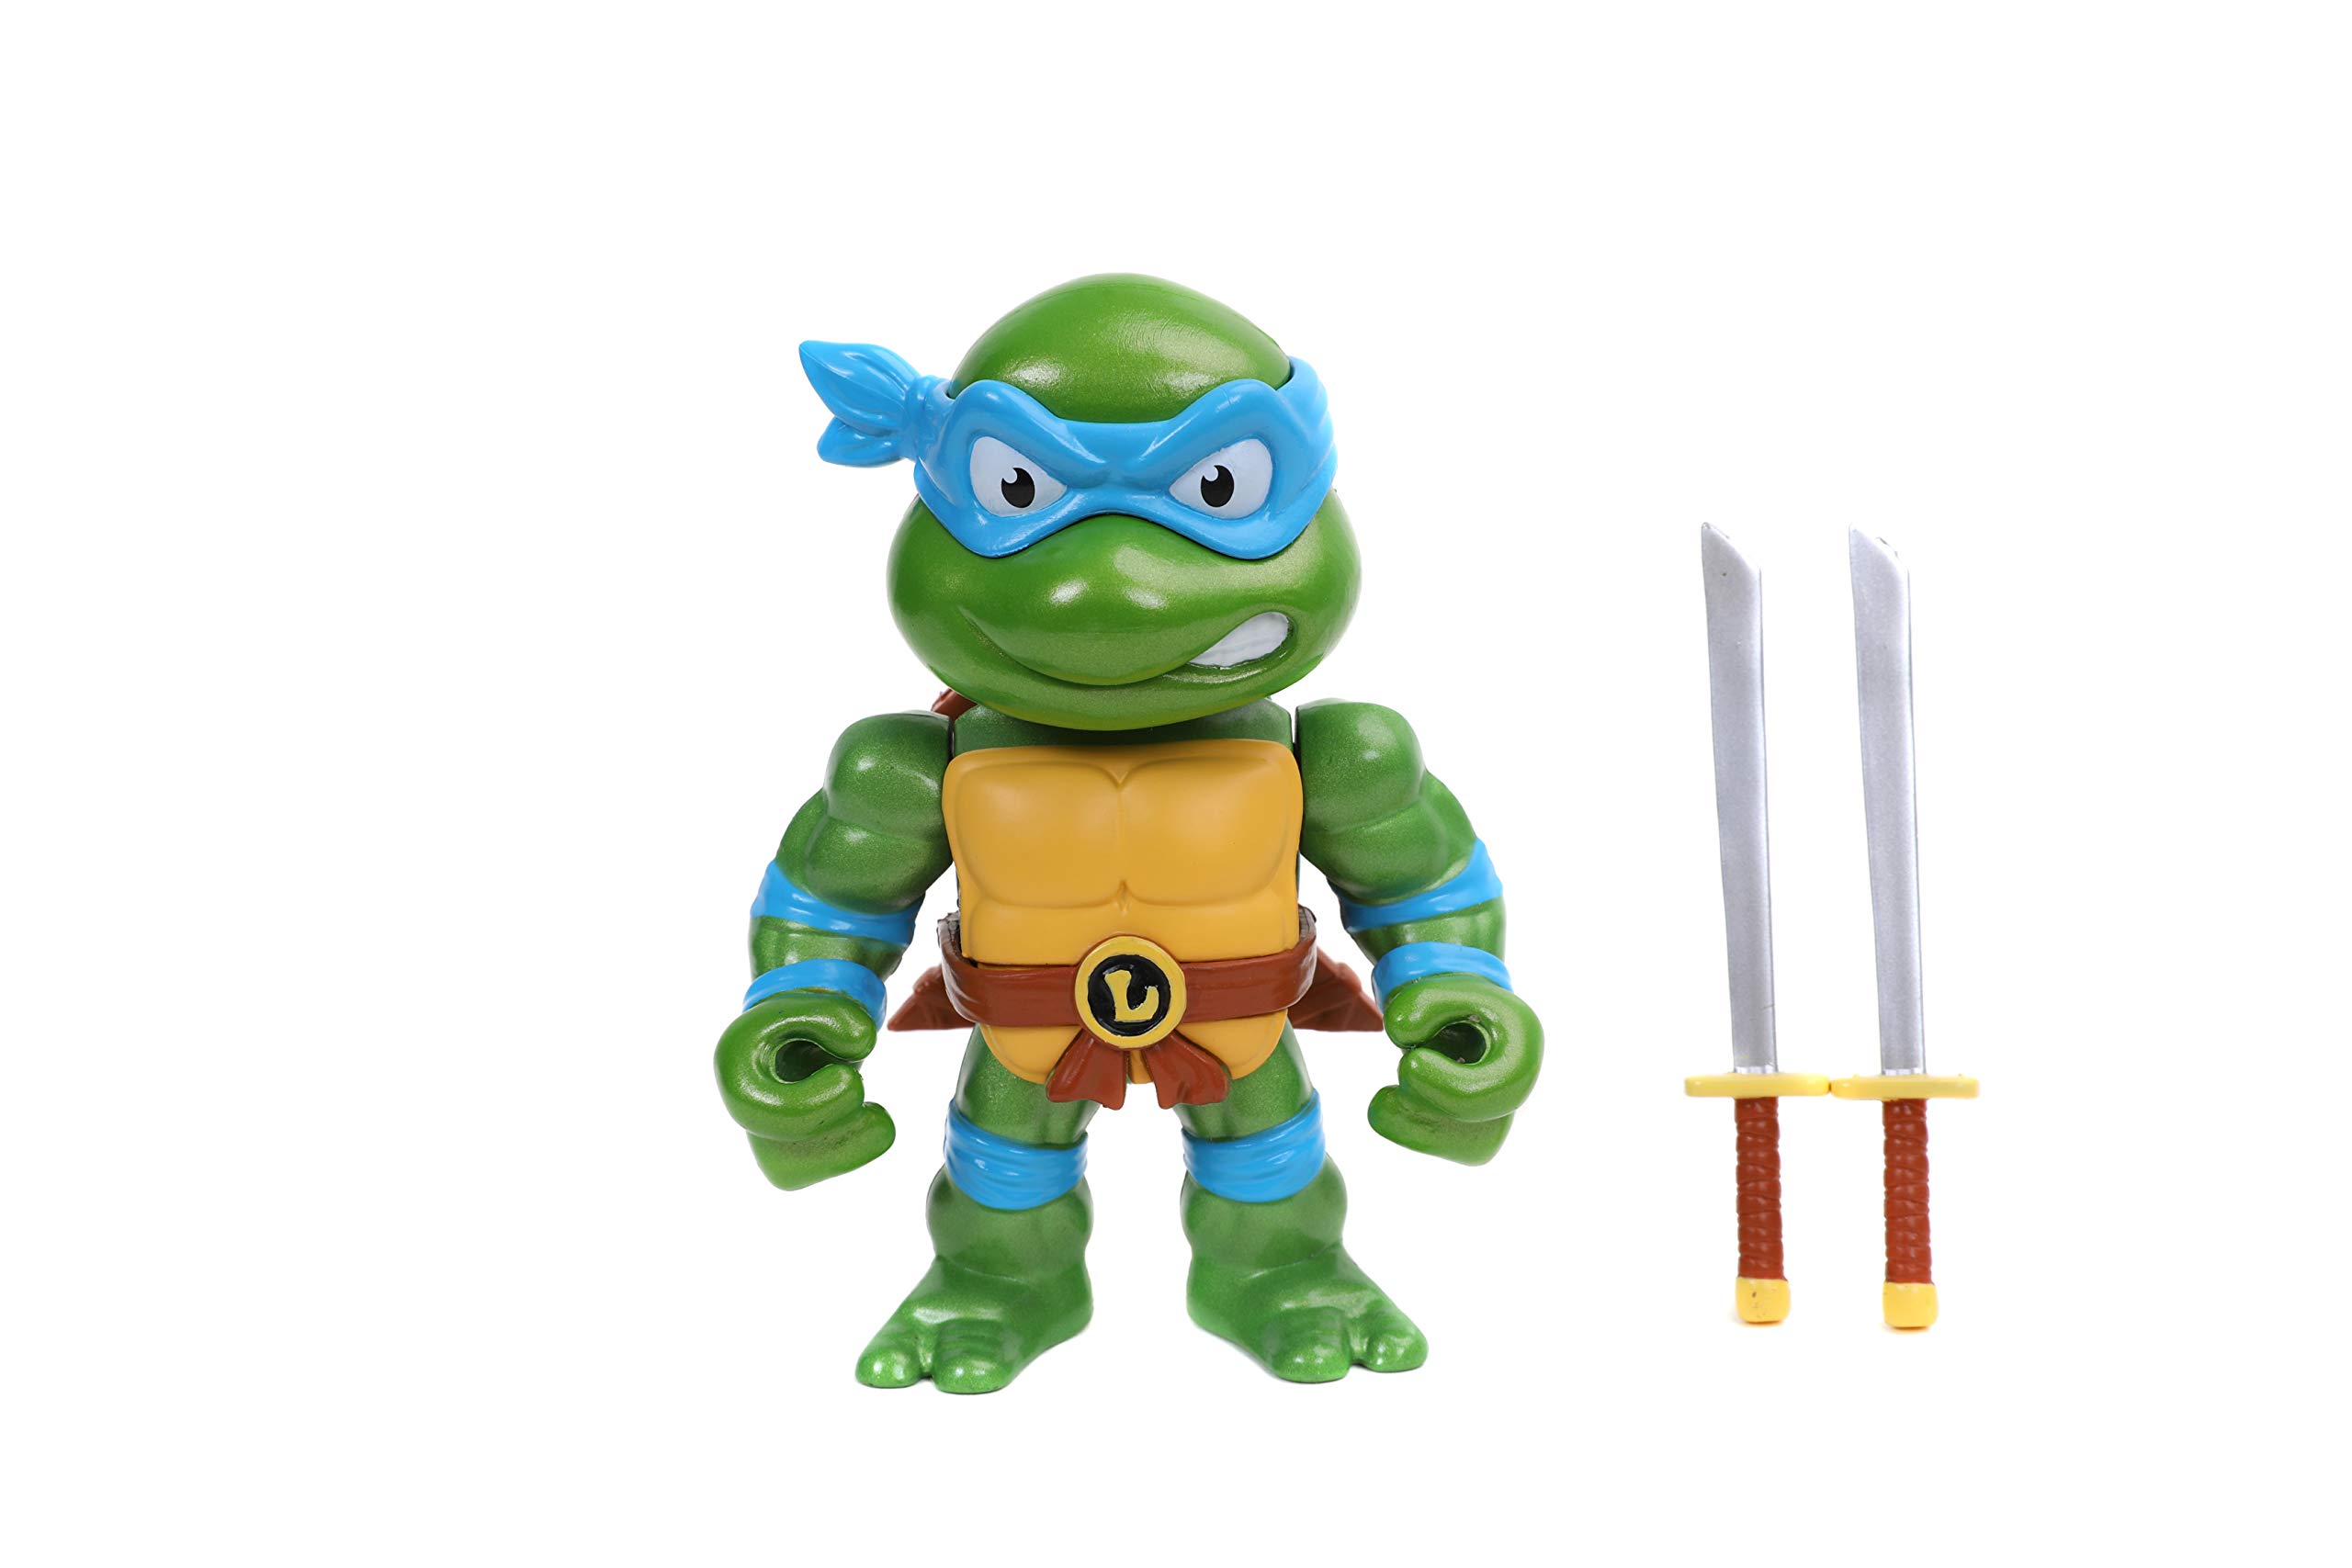 Jada Toys Teenage Mutant Ninja Turtles 4 Leonardo Die-cast Figure, Toys for Kids and Adults, Blue